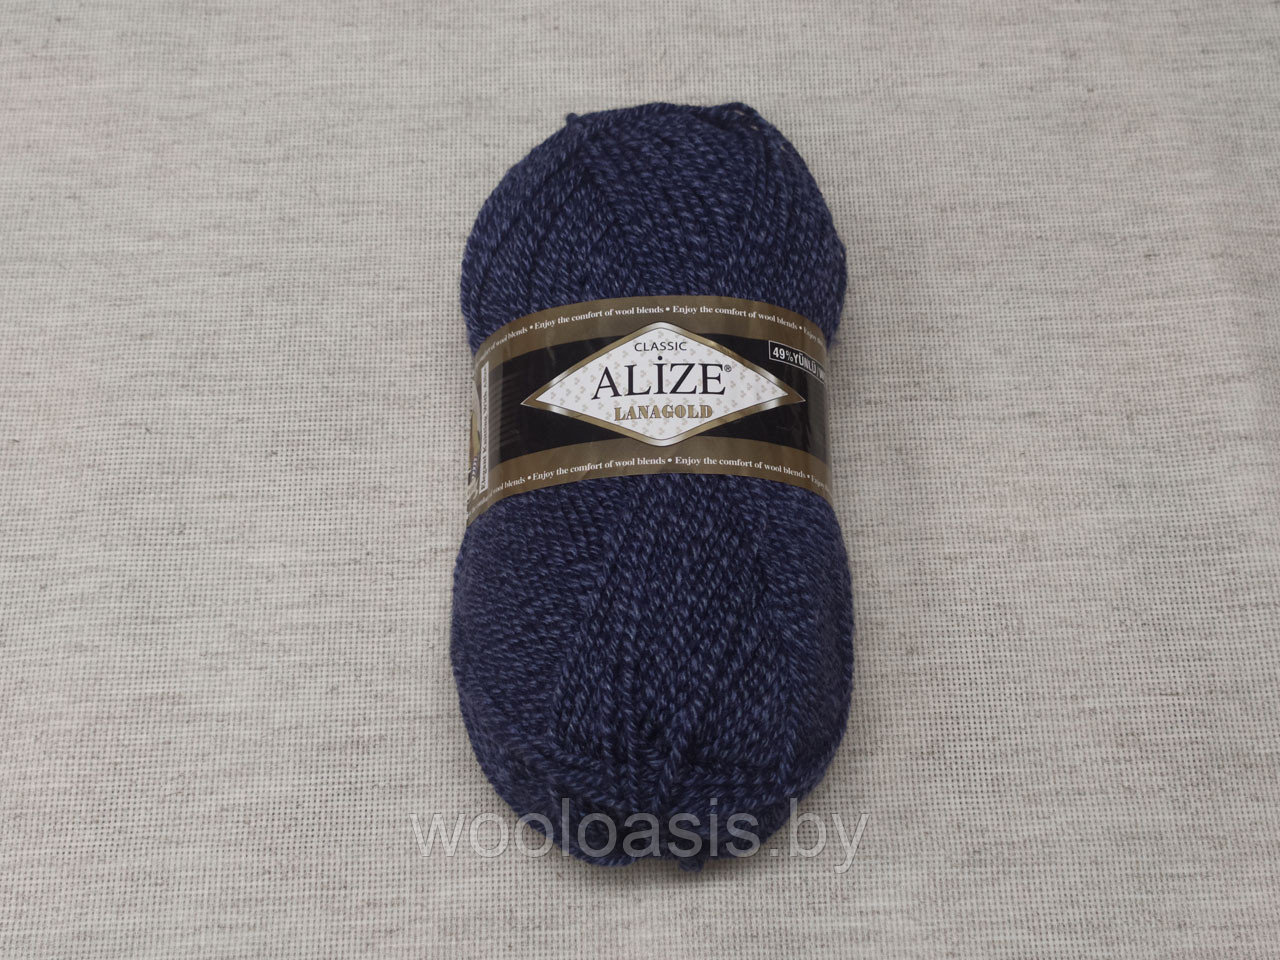 Пряжа Alize Lanagold Classic, Ализе Ланаголд Классик, турецкая, шерсть с акрилом, для ручного вязания (цвет 901)